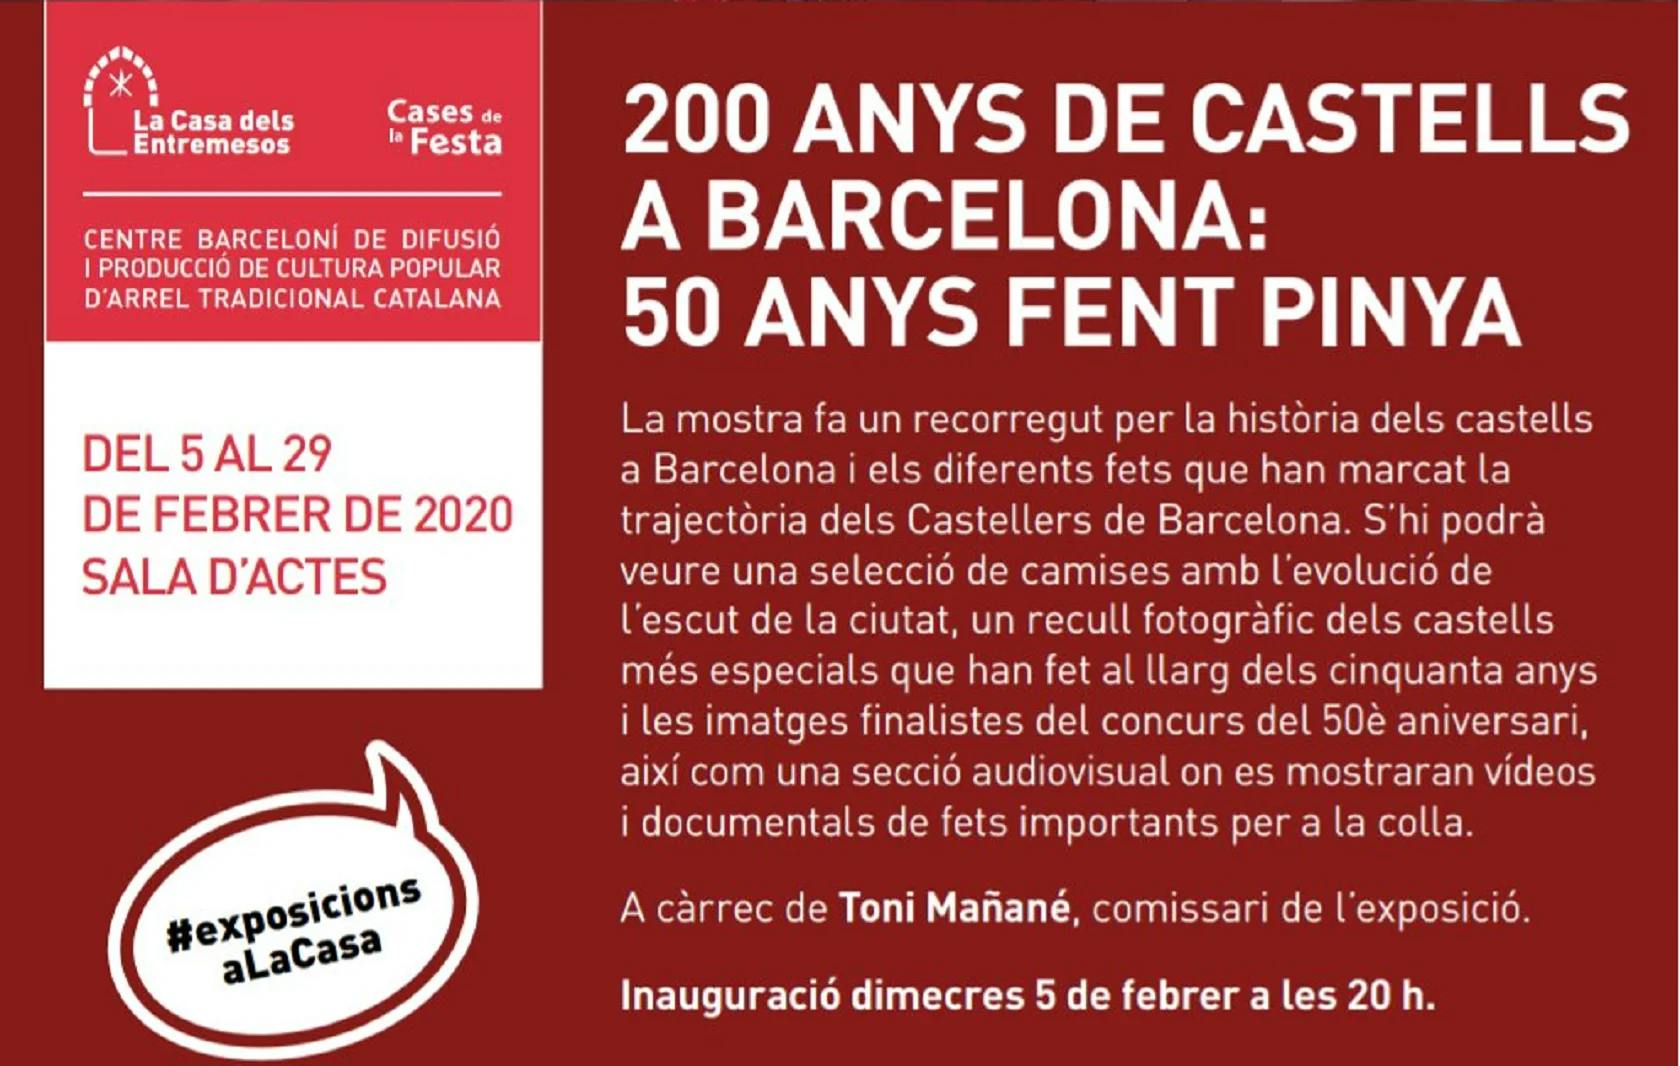 Exposició a la Casa dels Entremesos: 200 anys de castells a Barcelona, 50 anys fent pinya